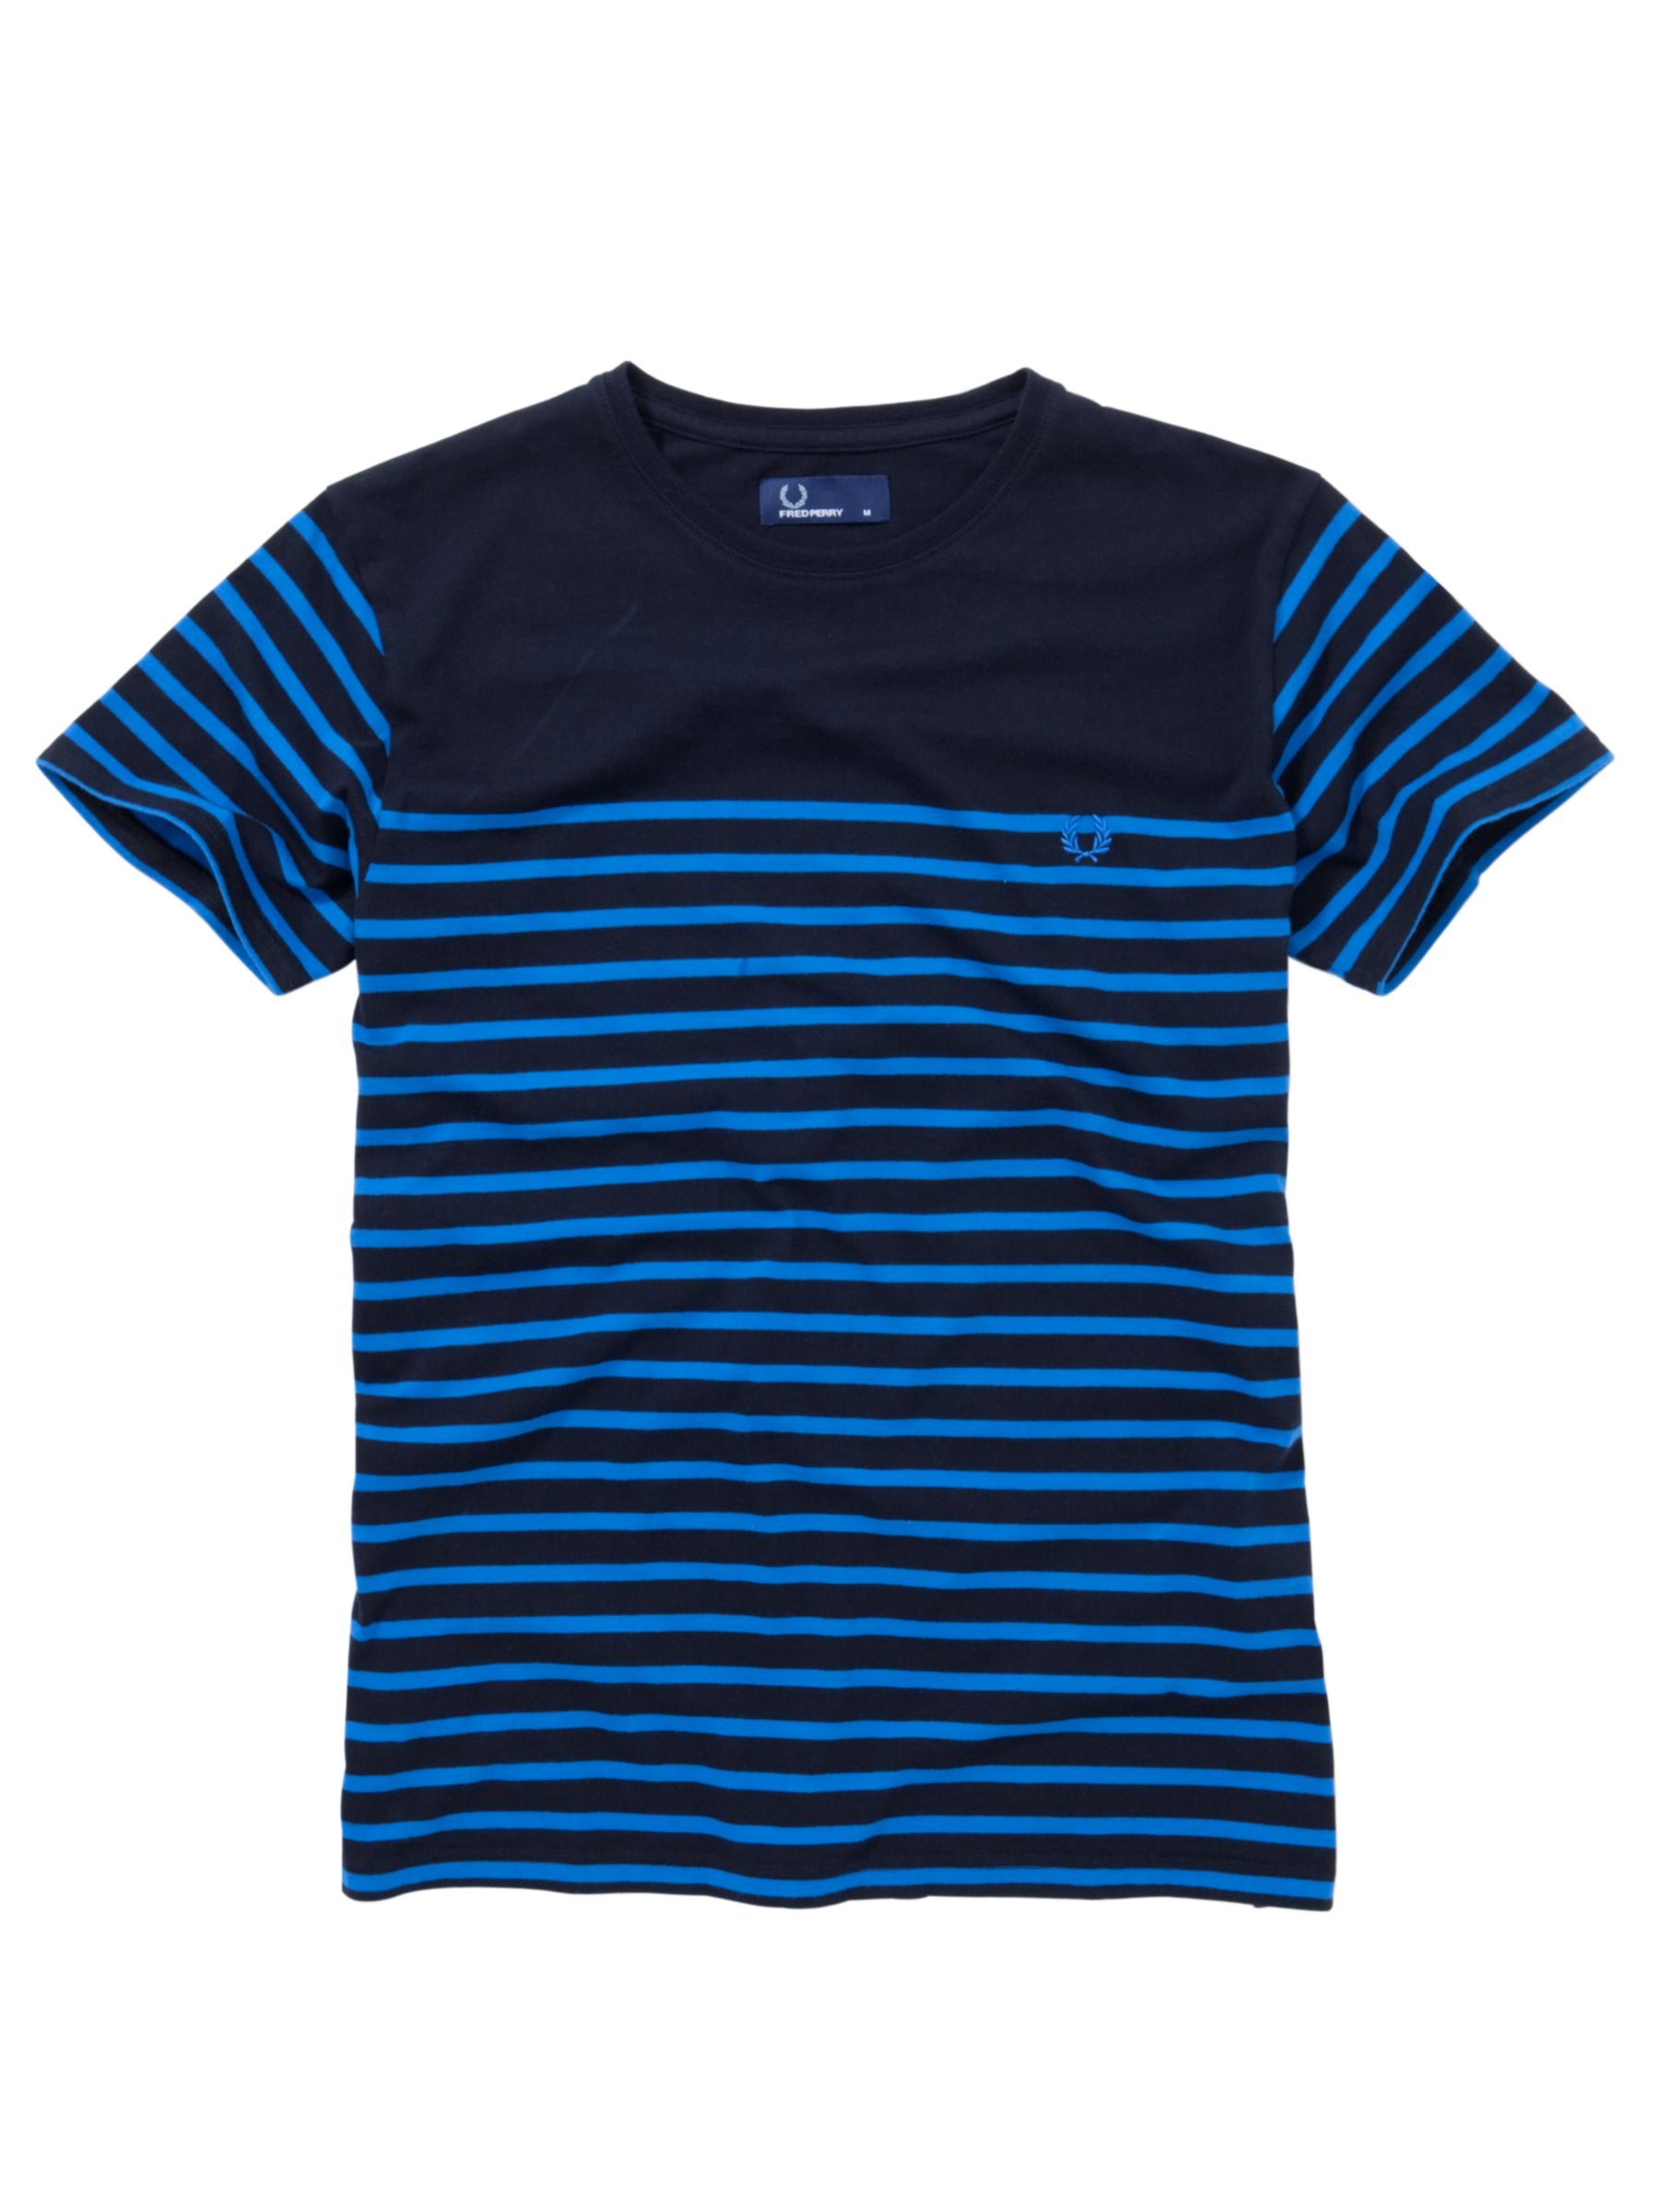 Breton Short-sleeved Stripe T-Shirt,